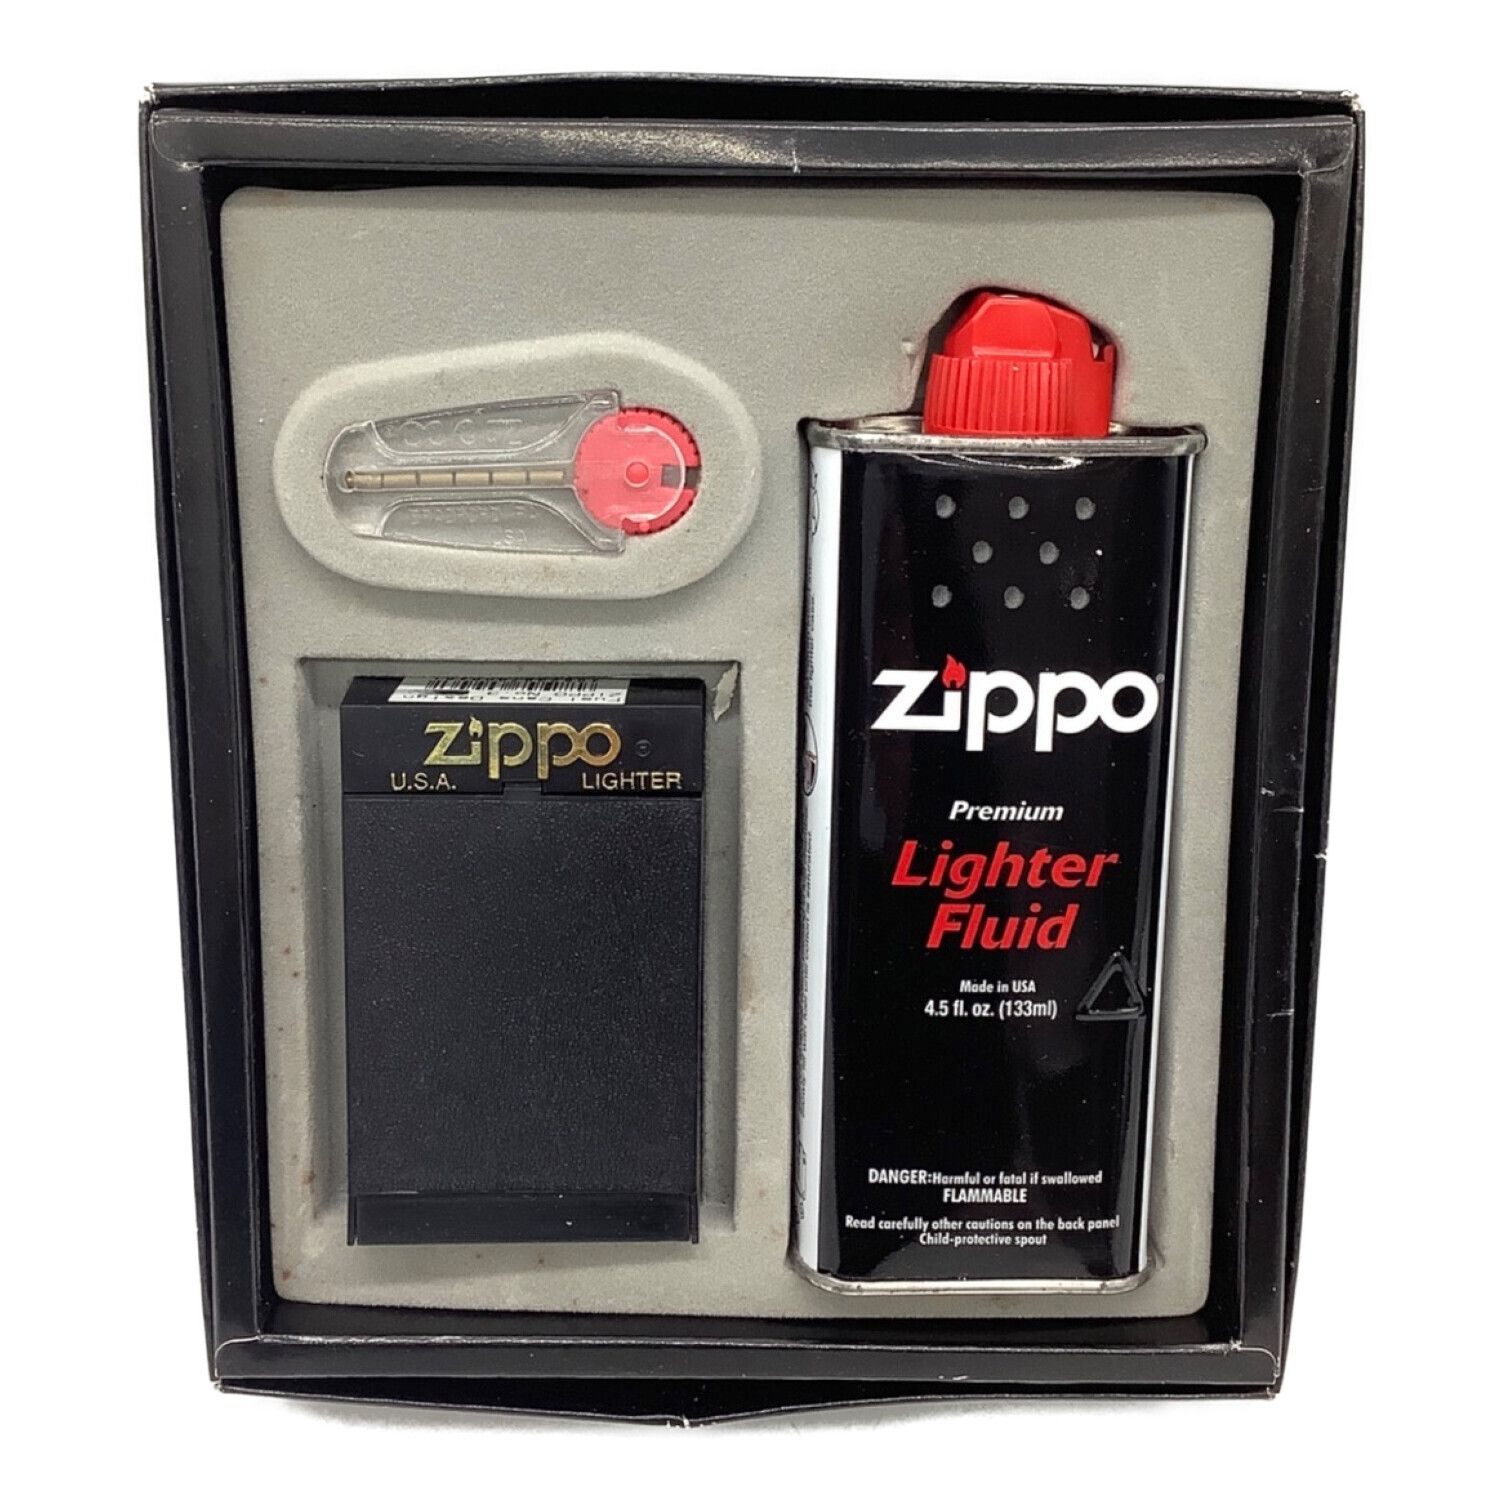 ZIPPO (ジッポ) 歴代オイル缶柄ジッポー ギフトセット 2002年製 未開封